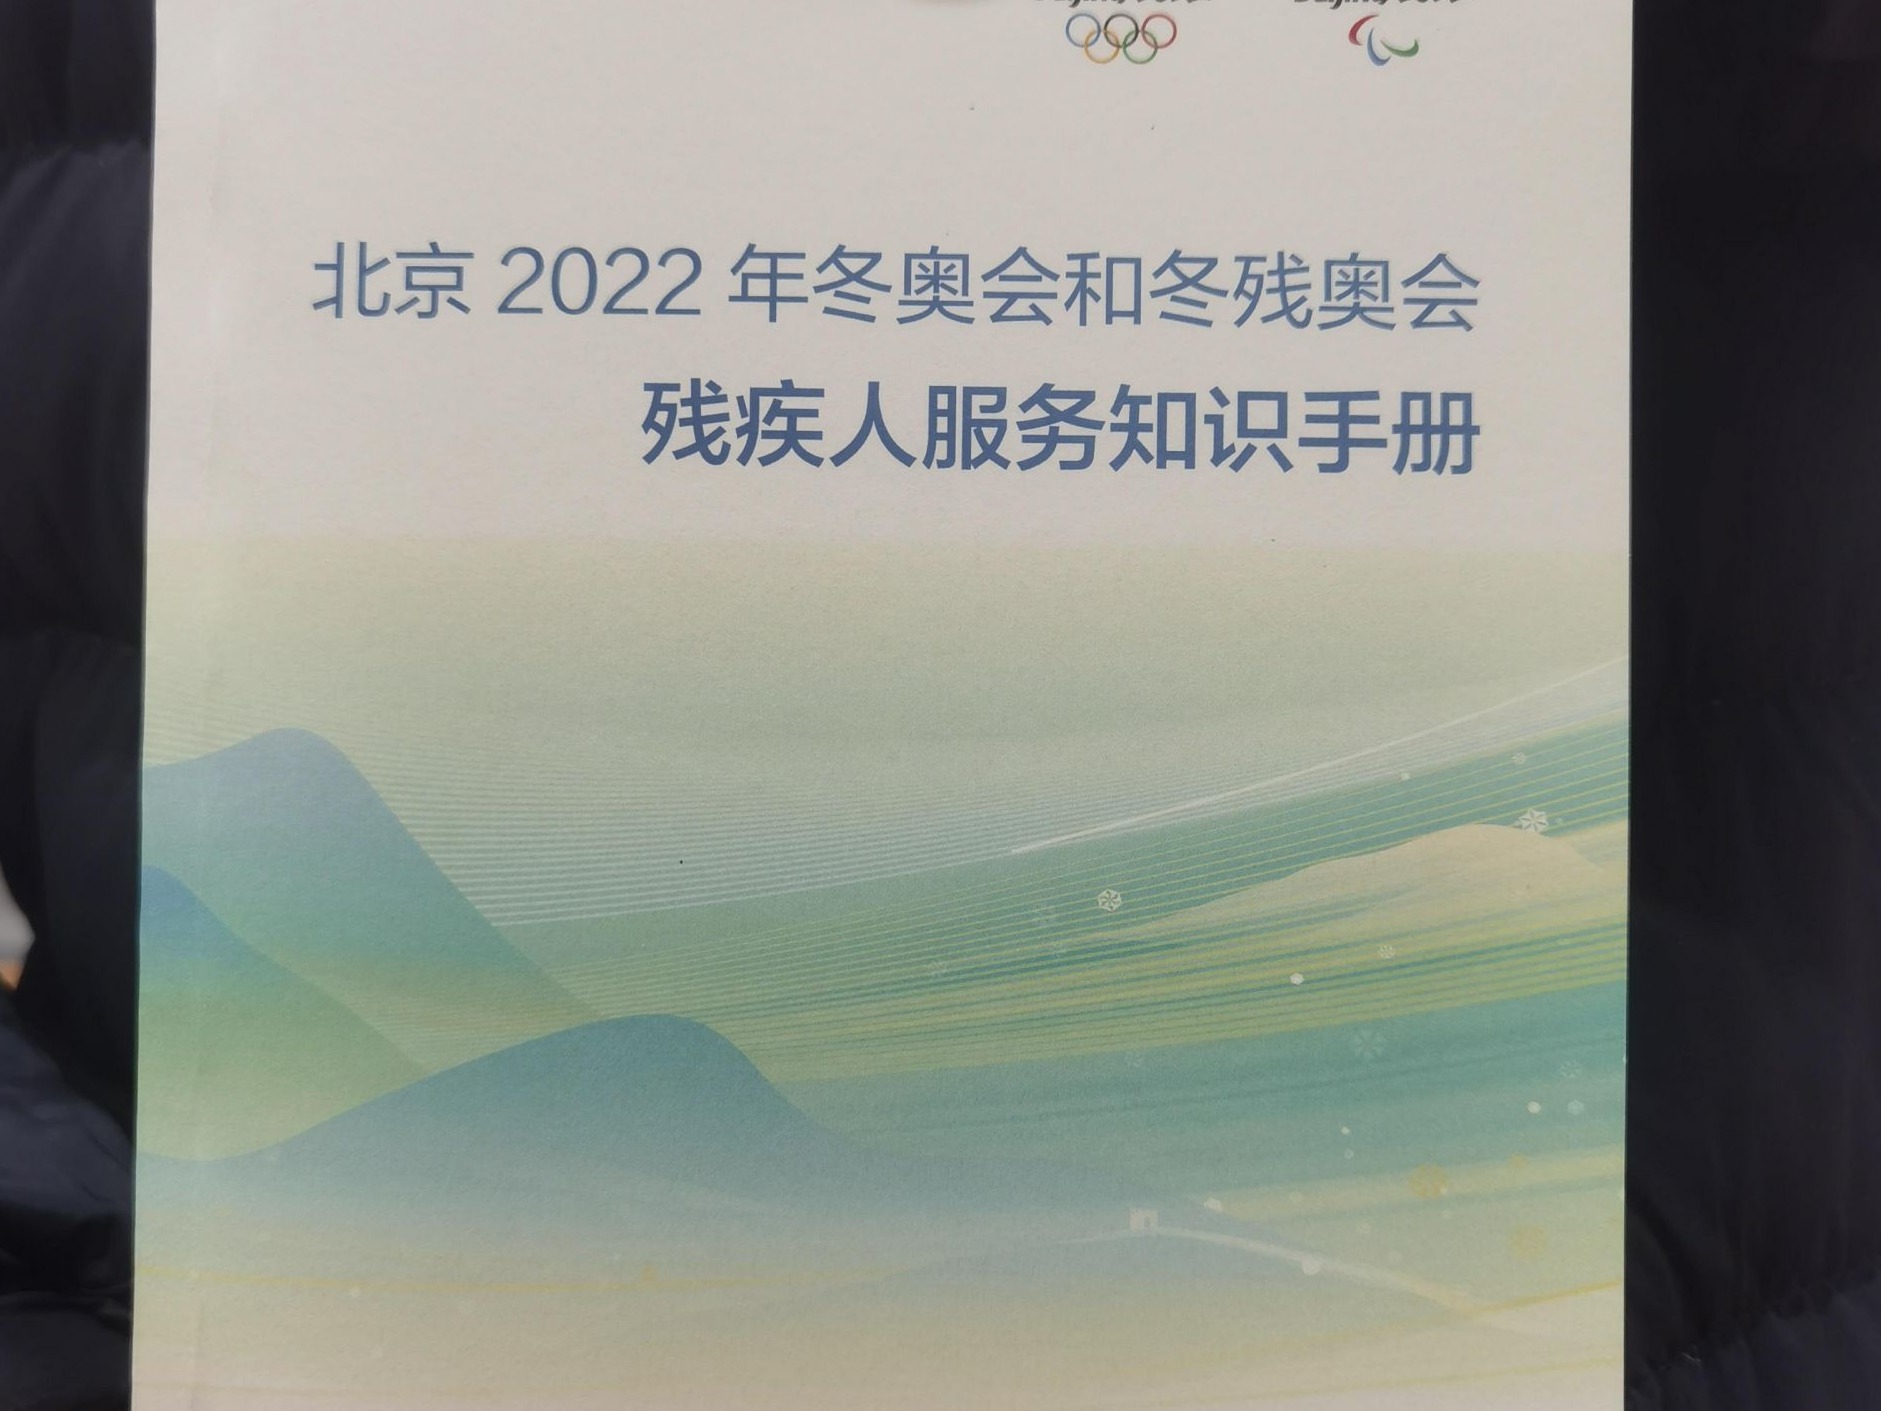 北京2022年冬奥会和冬残奥会残疾人服务知识手册发布